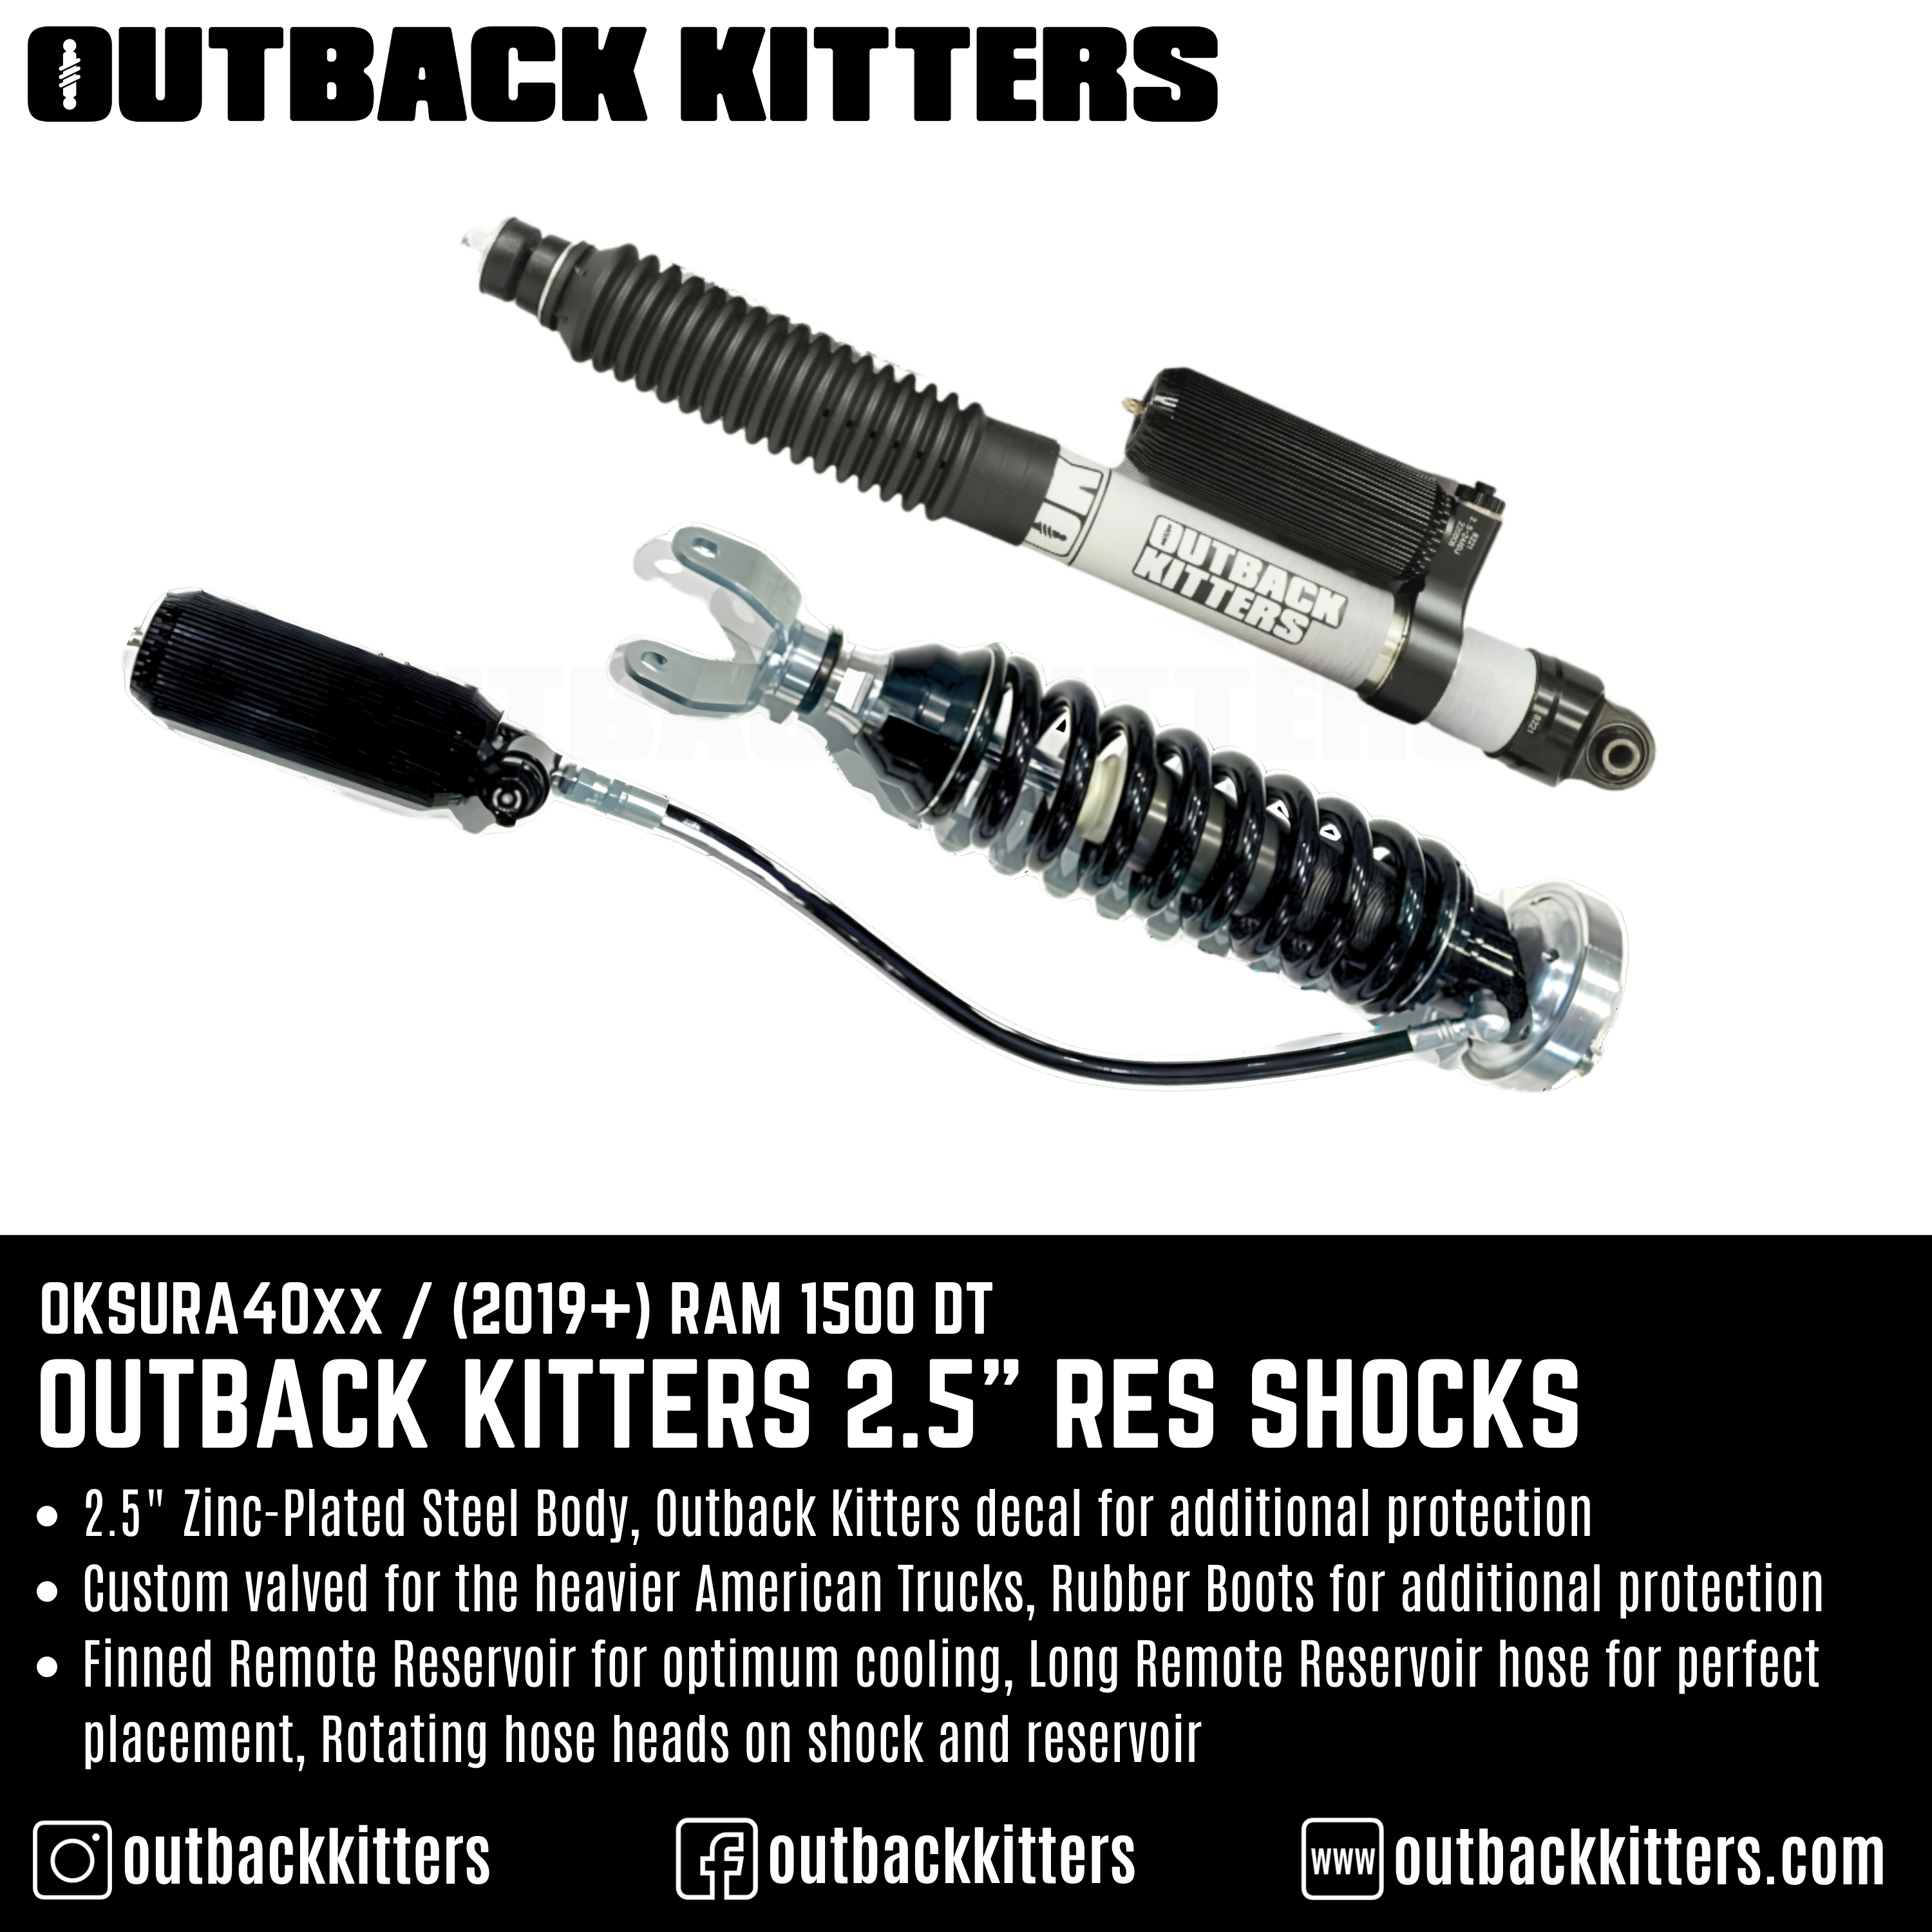 Outback Kitters 2.5" Reservoir Shocks for Ram 1500 DT (2019+) - Outback Kitters